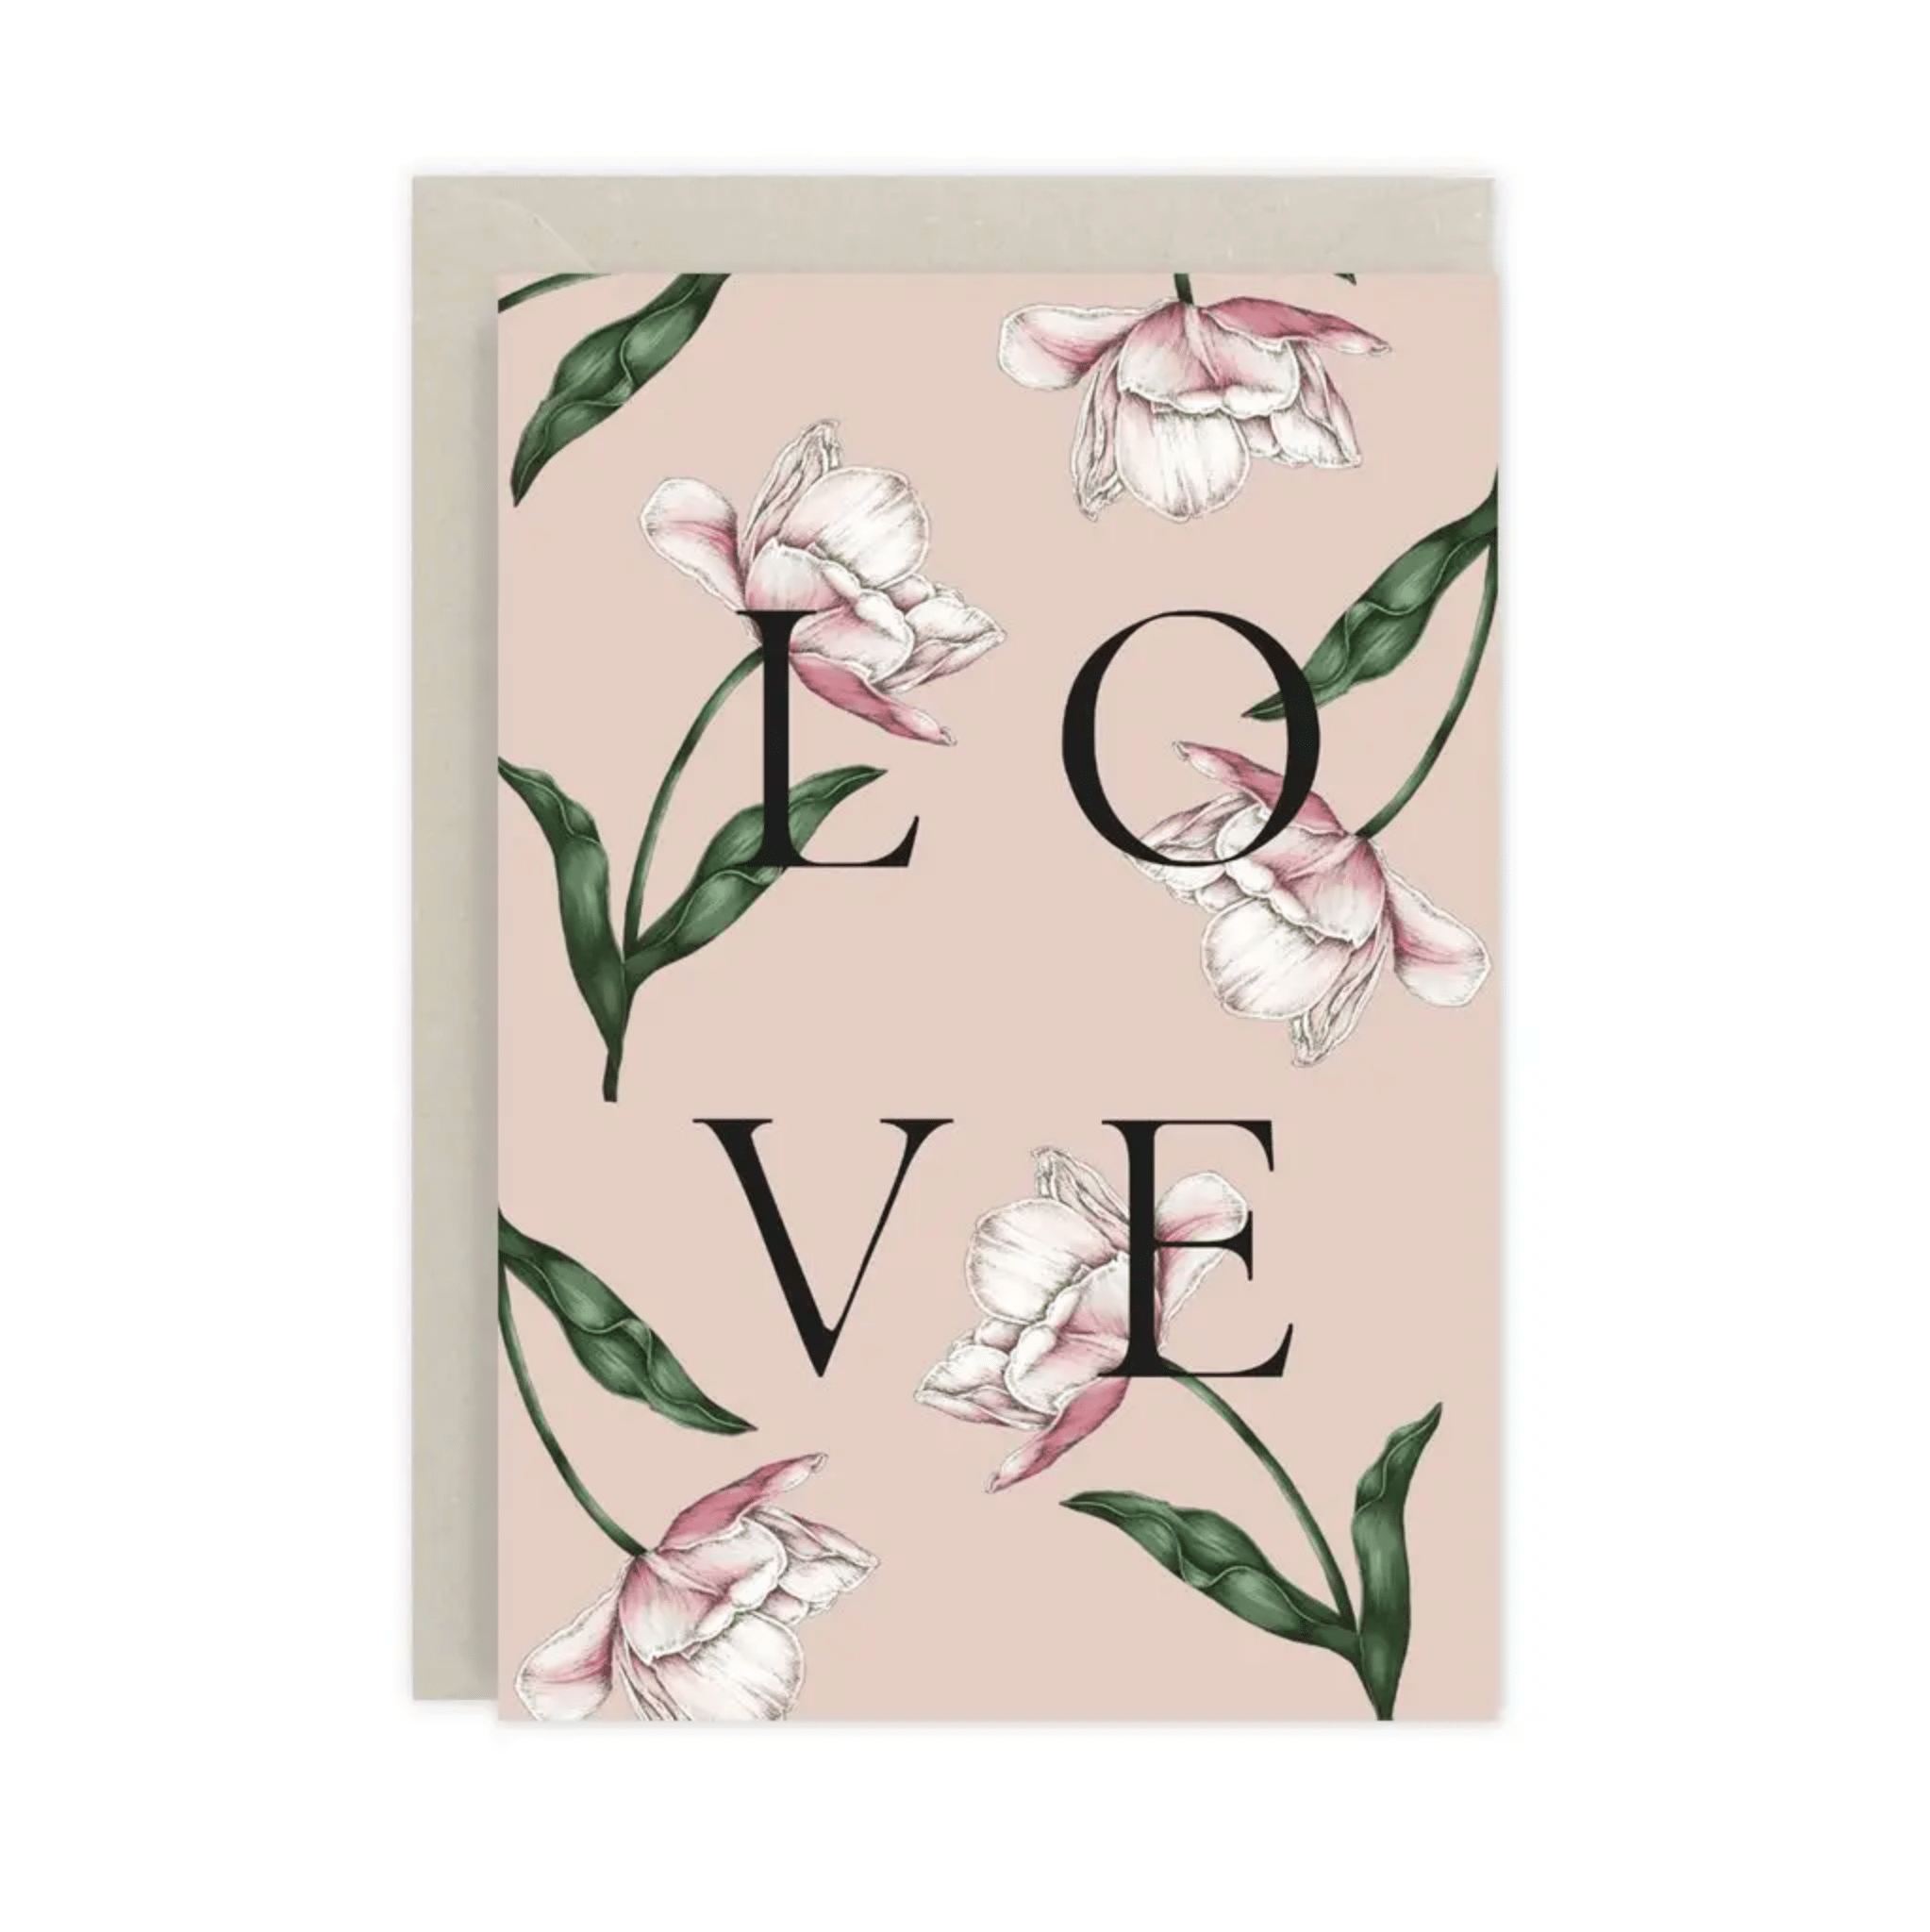 Stylish luxury stationary hand illustrated botanical design pink love greetings card Catherine Lewis UK 